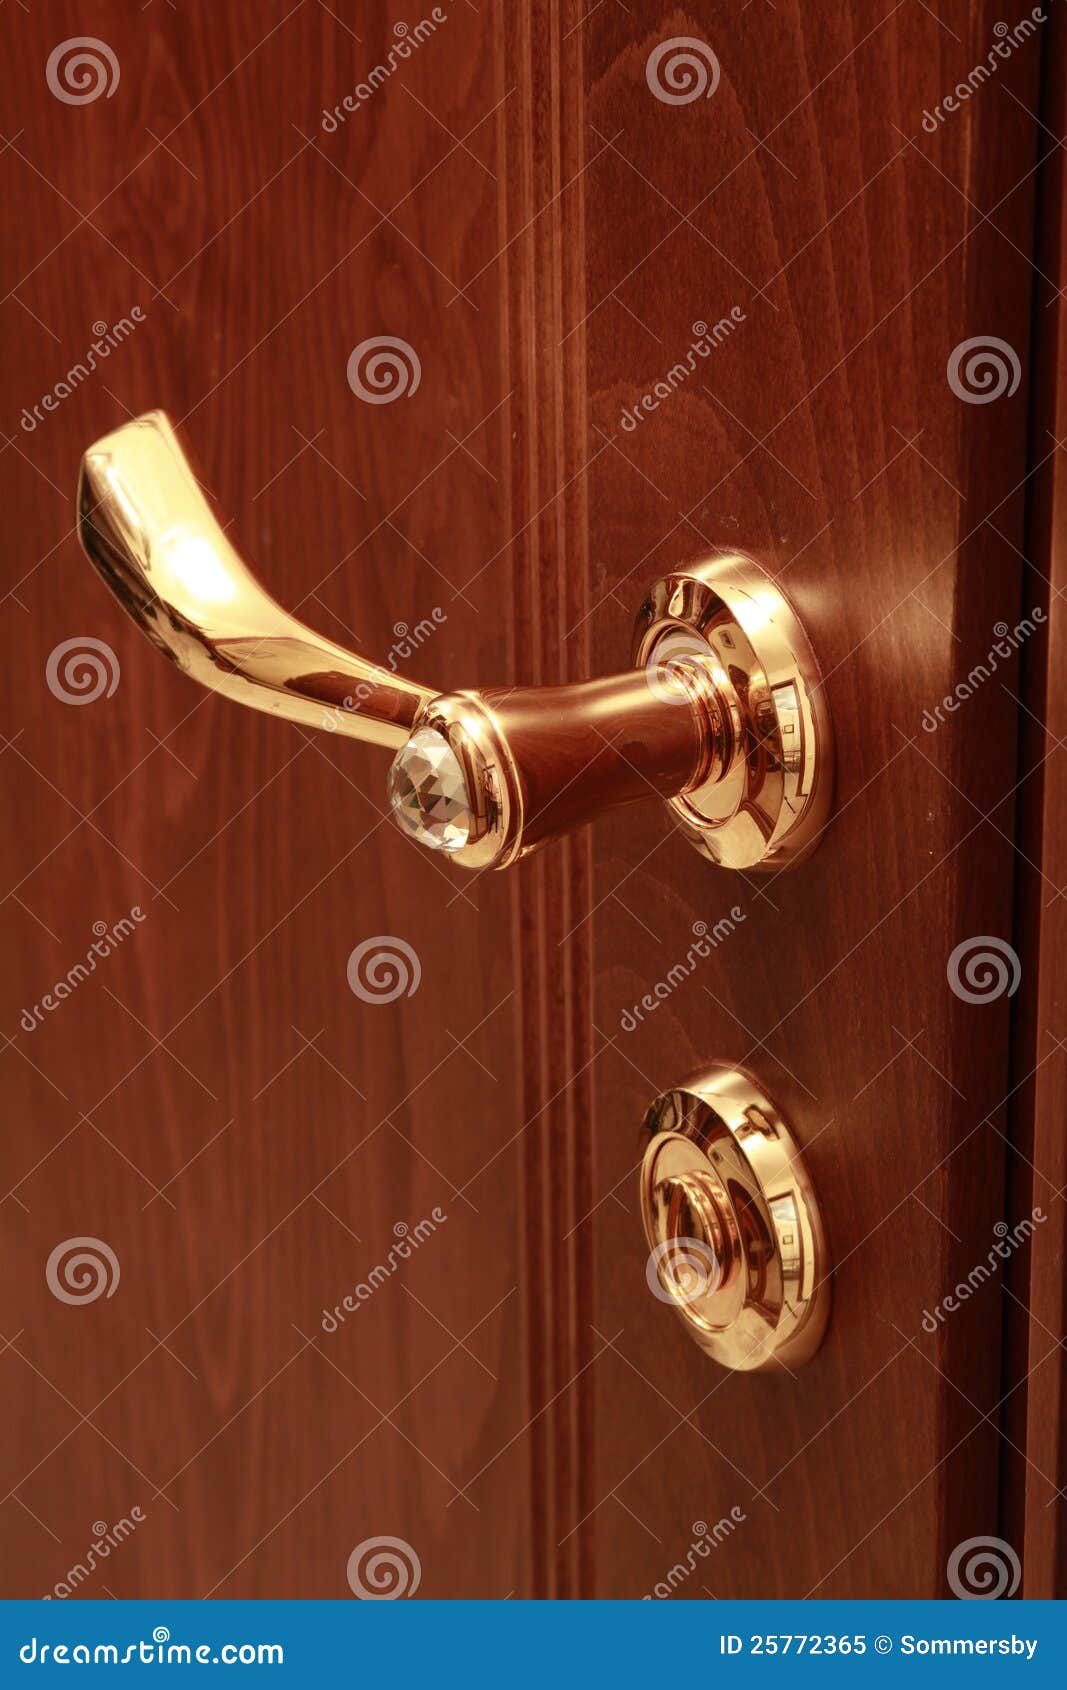 wooden door with the lock